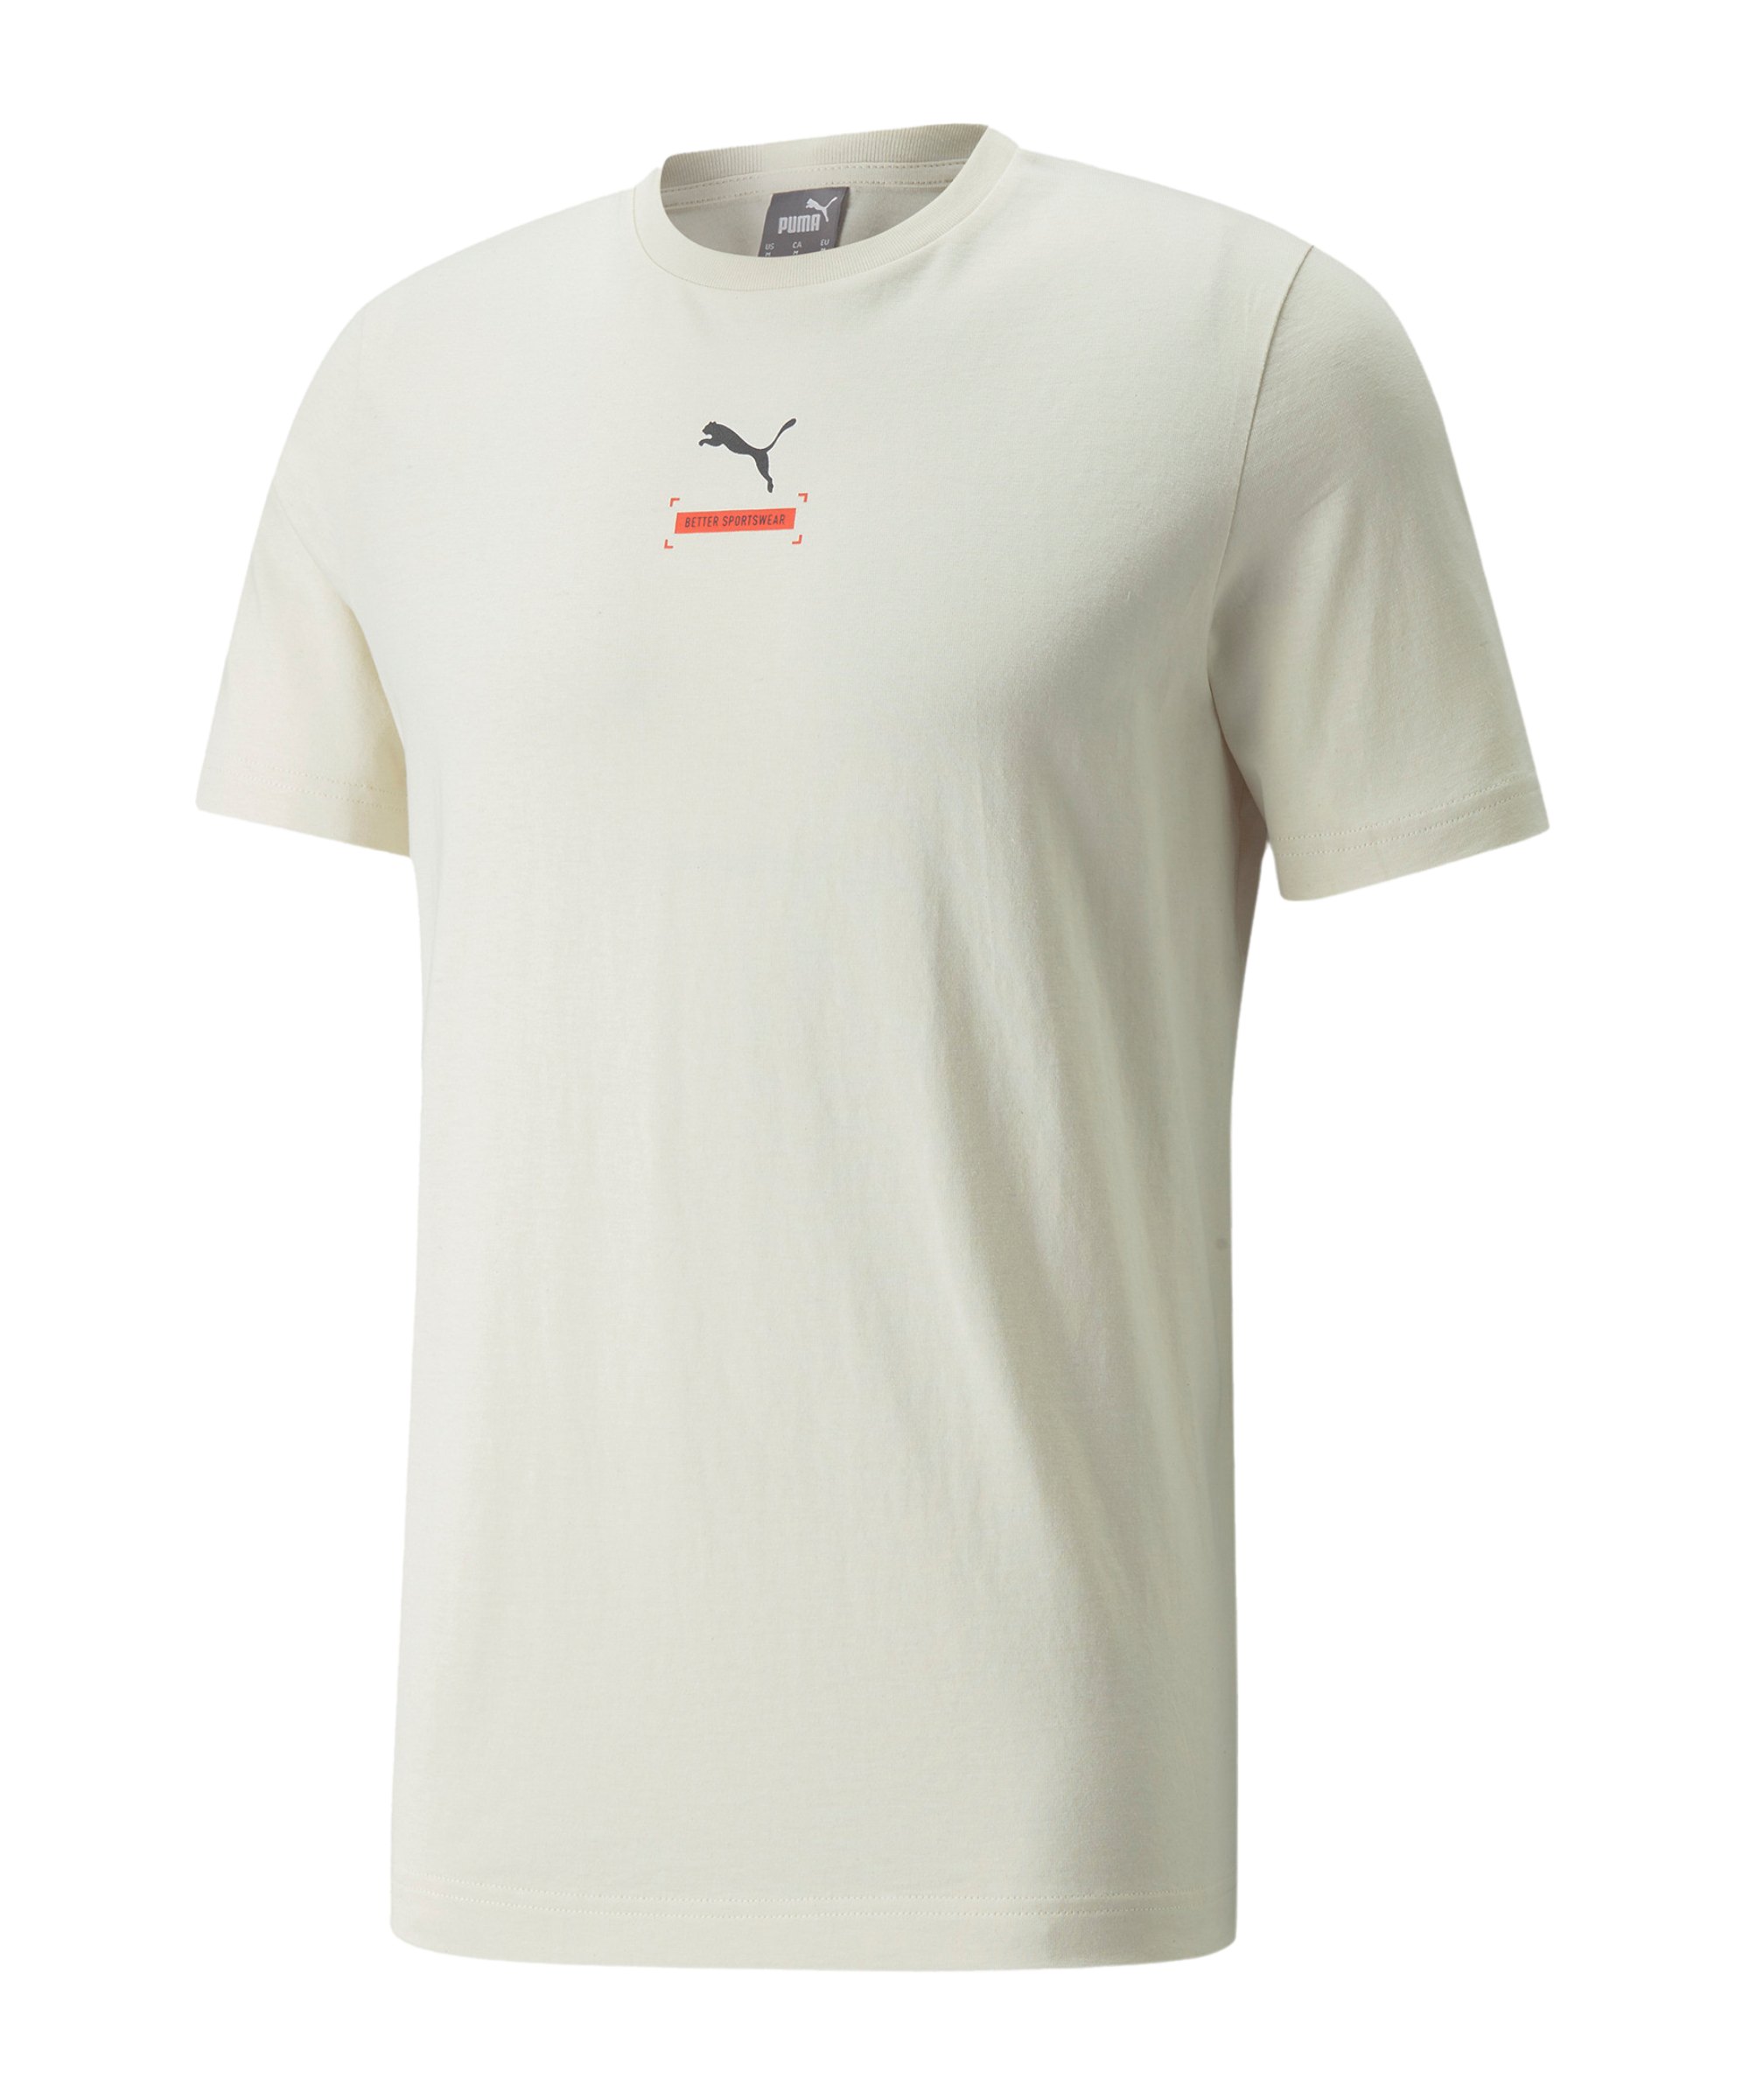 PUMA Better T-Shirt F99 - mehrfarbig